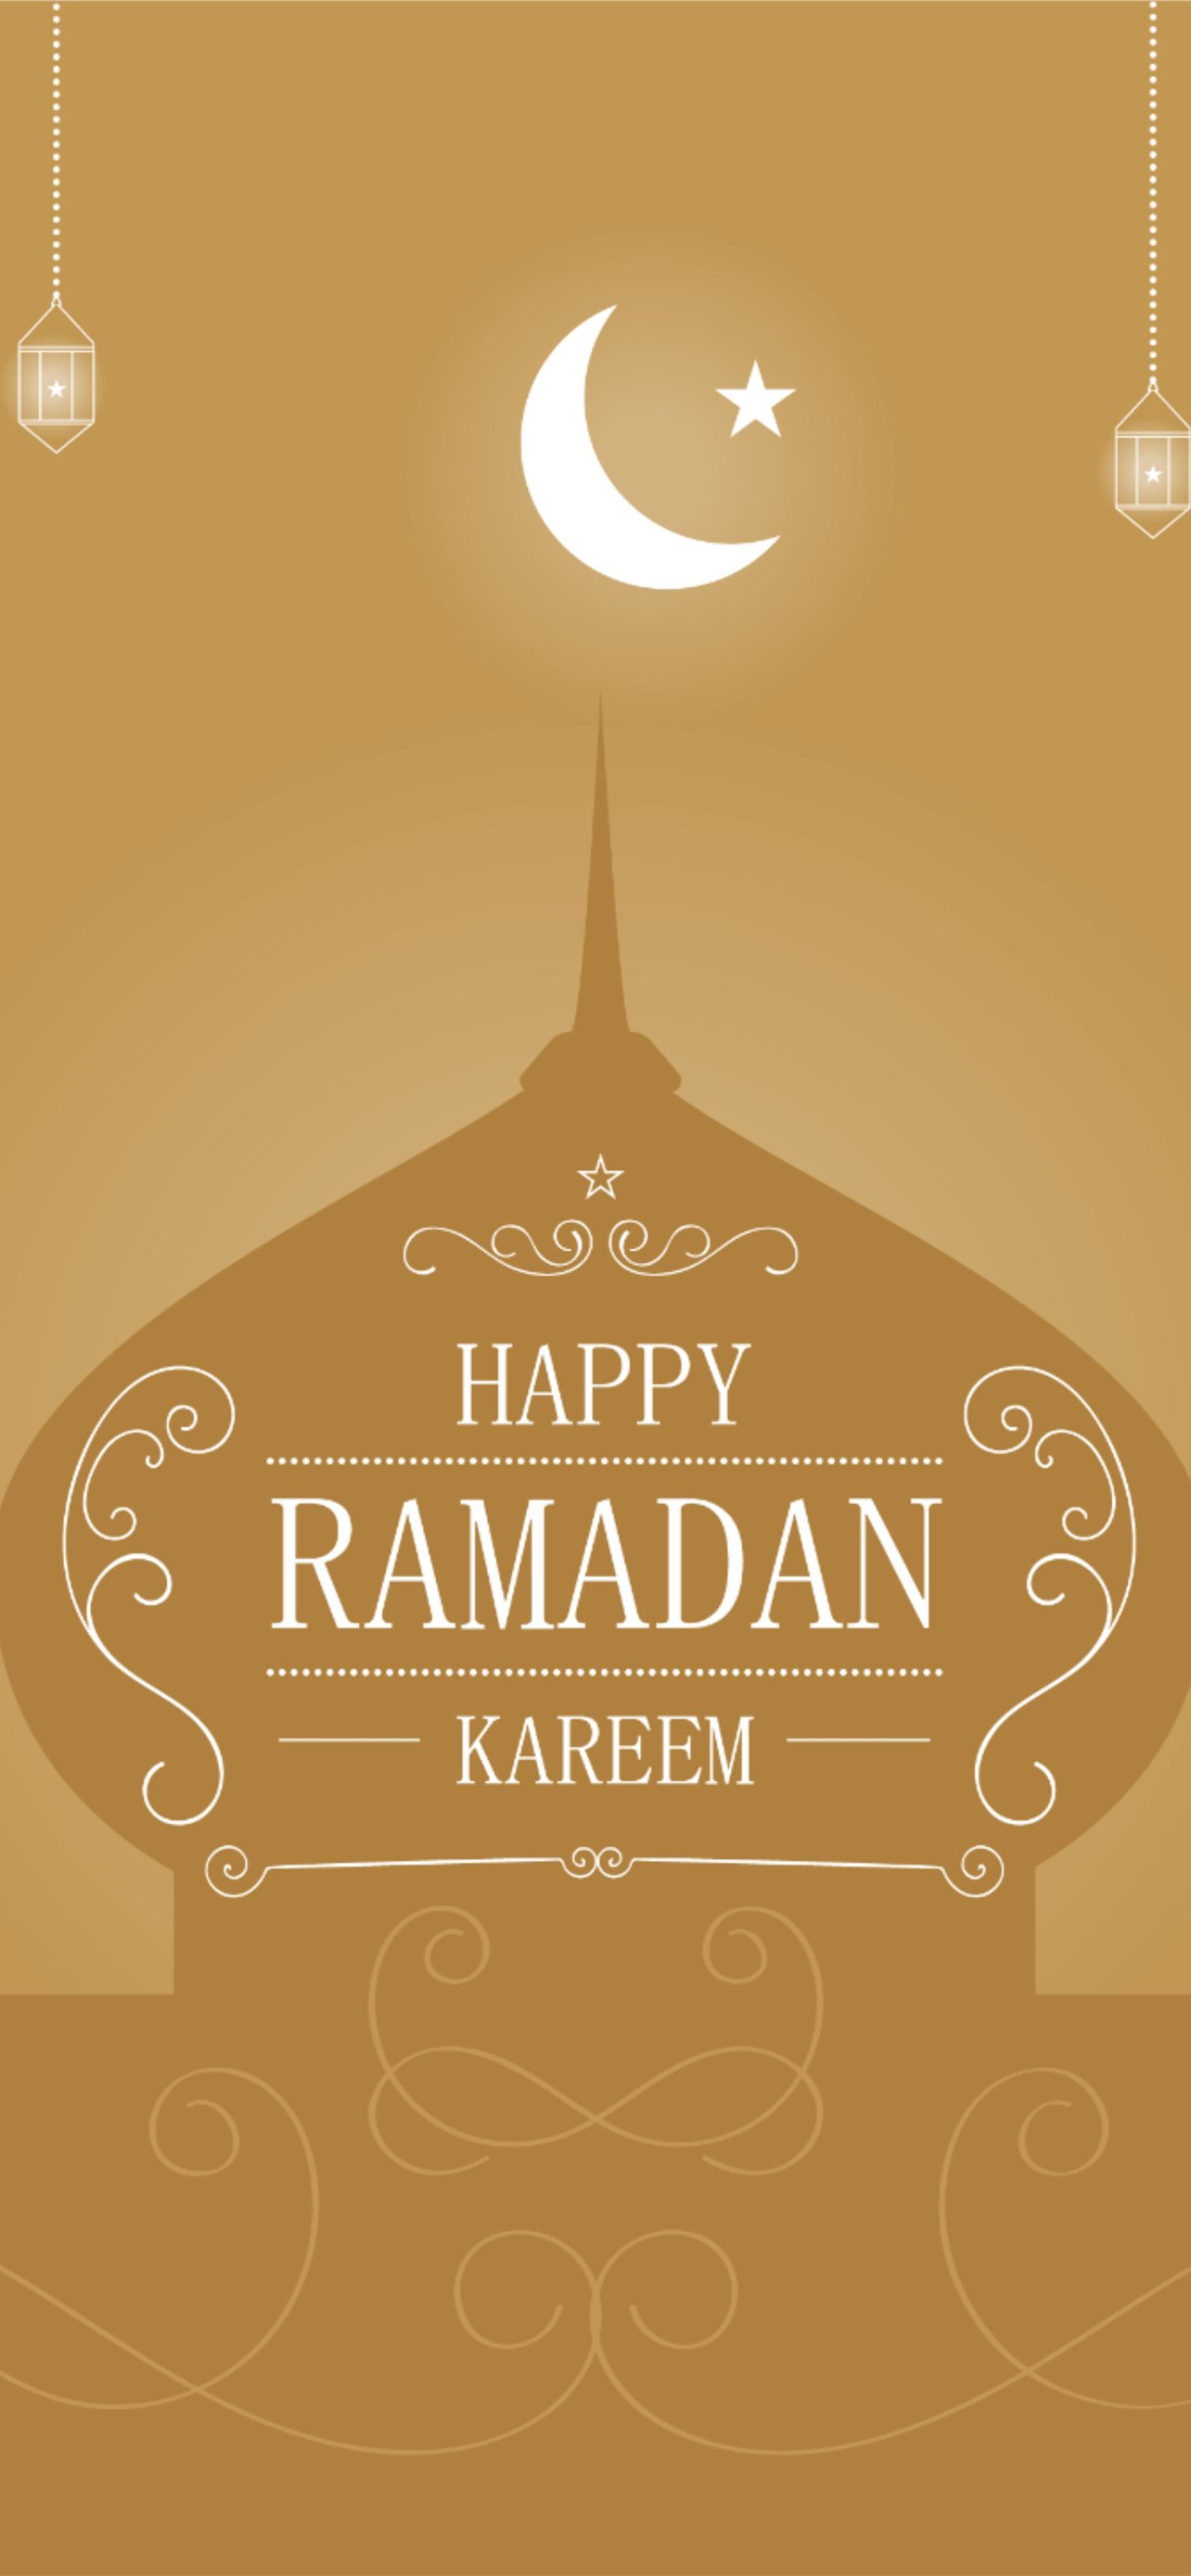 Premium Vector  Ramadan kareem background  Ramadan wishes Ramadan  mubarak wallpapers Happy ramadan mubarak